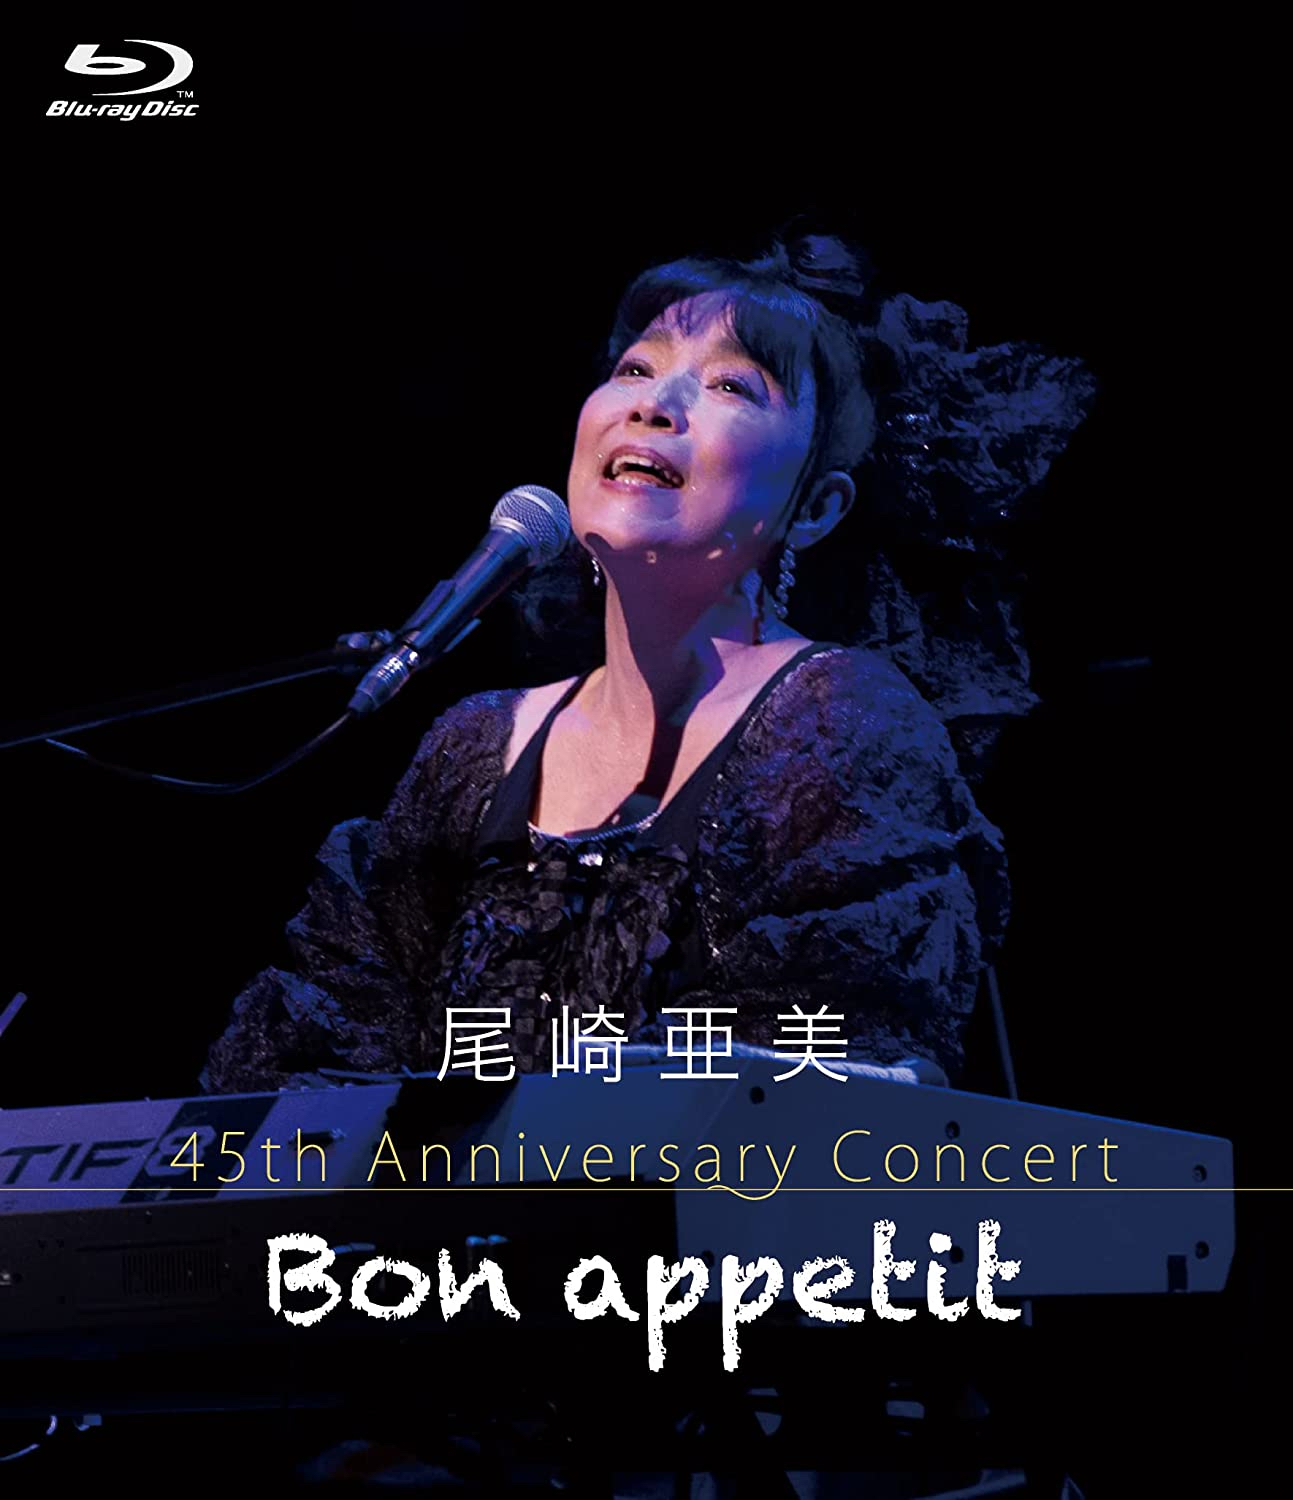 尾崎亜美、昨年のコンサートを 完全収録した BD/DVD が 7月6日